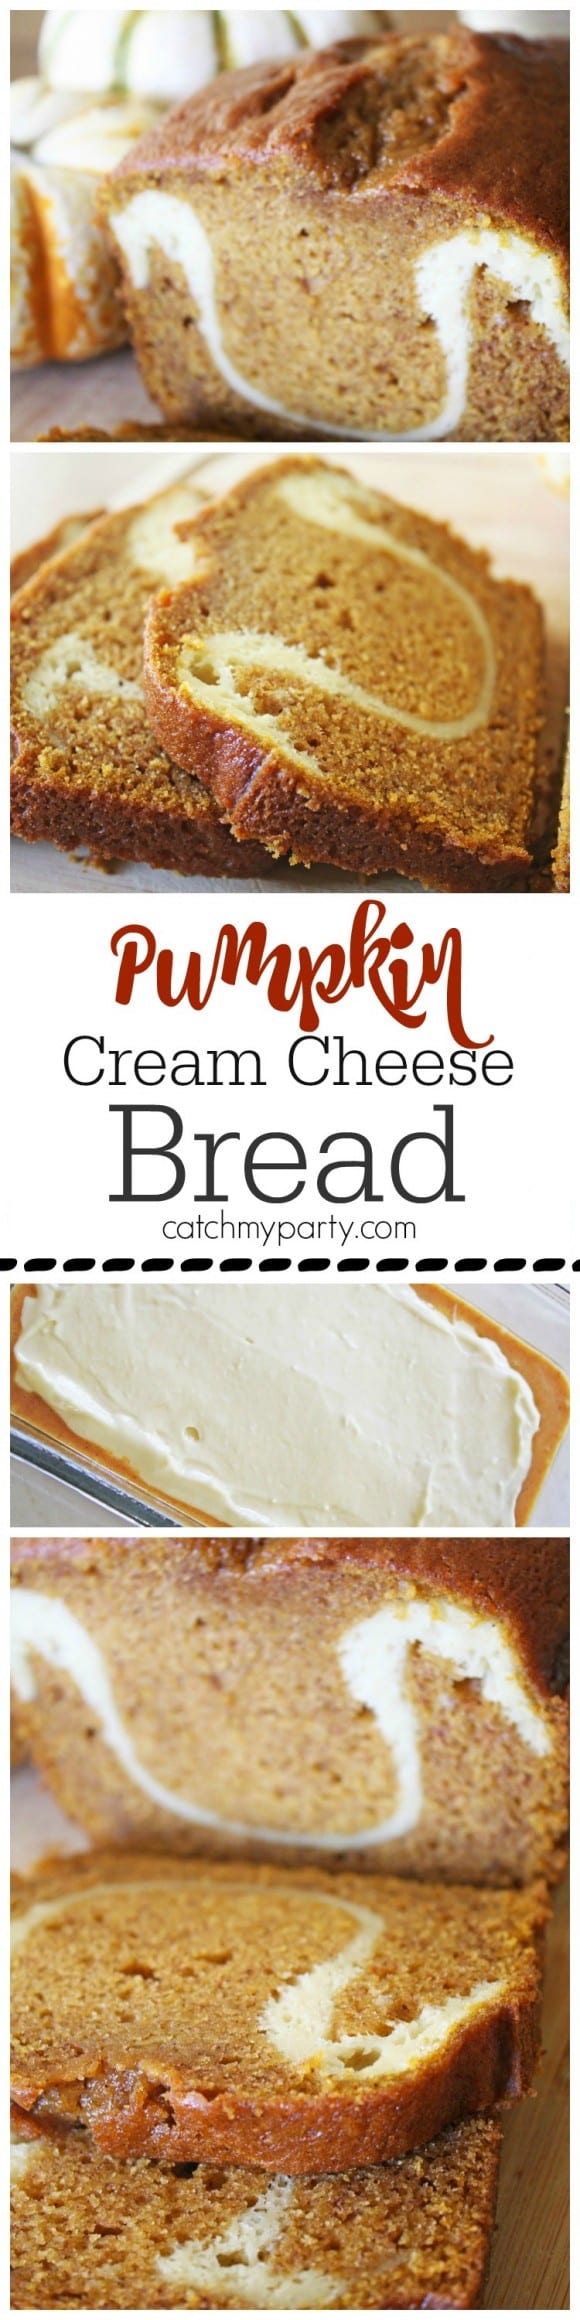 Last Minute Pumpkin Cream Cheese Bread Recipe | CatchMyParty.com